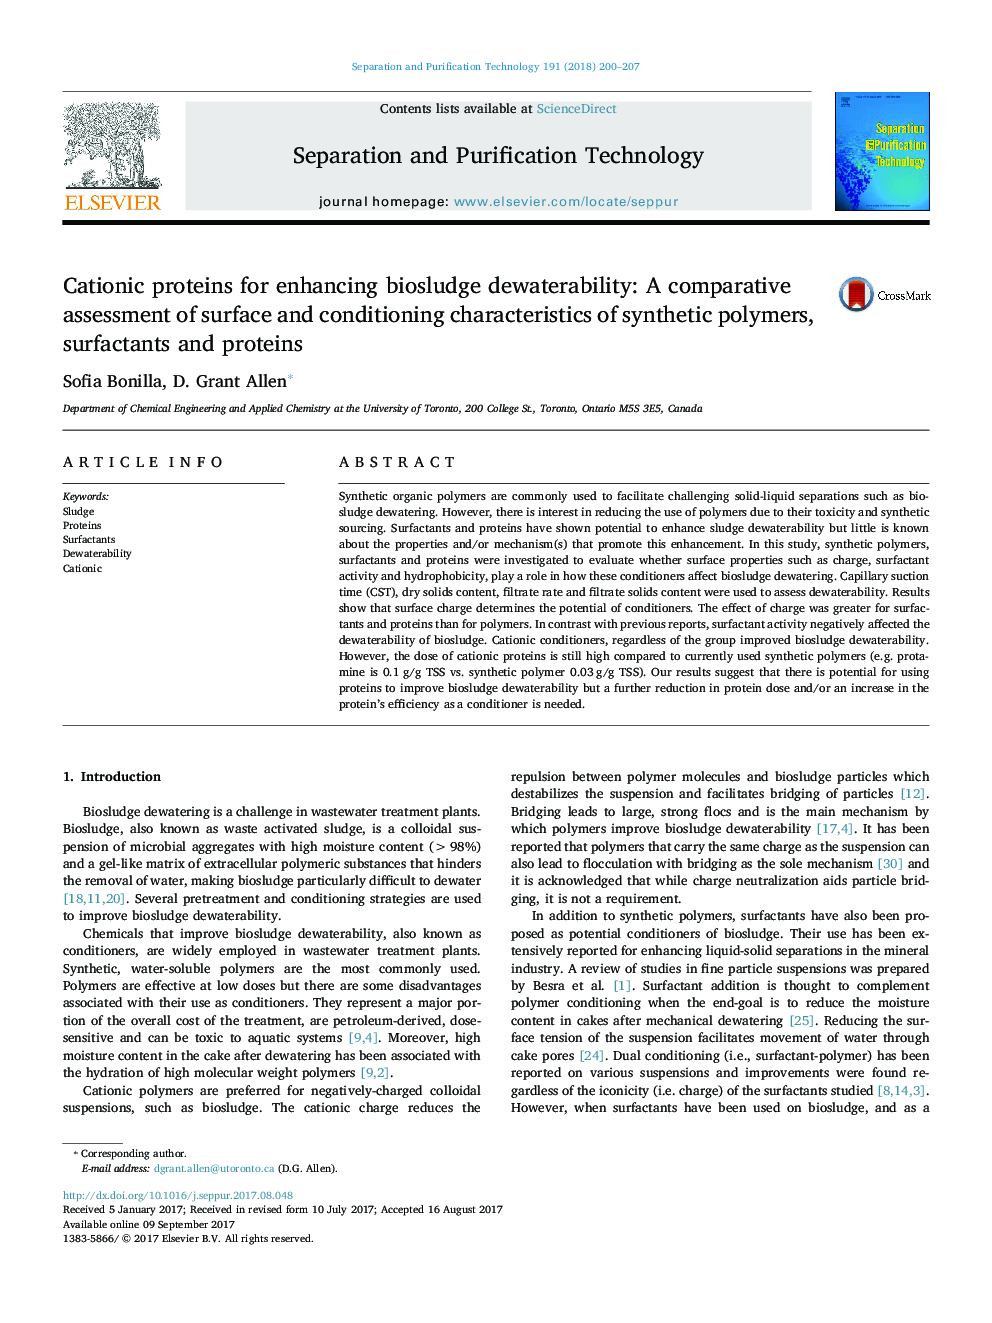 پروتئین های کاتیونی برای افزایش آب بندگی بیولوژیکی: ارزیابی مقایسه ای از ویژگی های سطح و تهویه پلیمر های مصنوعی، سورفکتانت ها و پروتئین ها